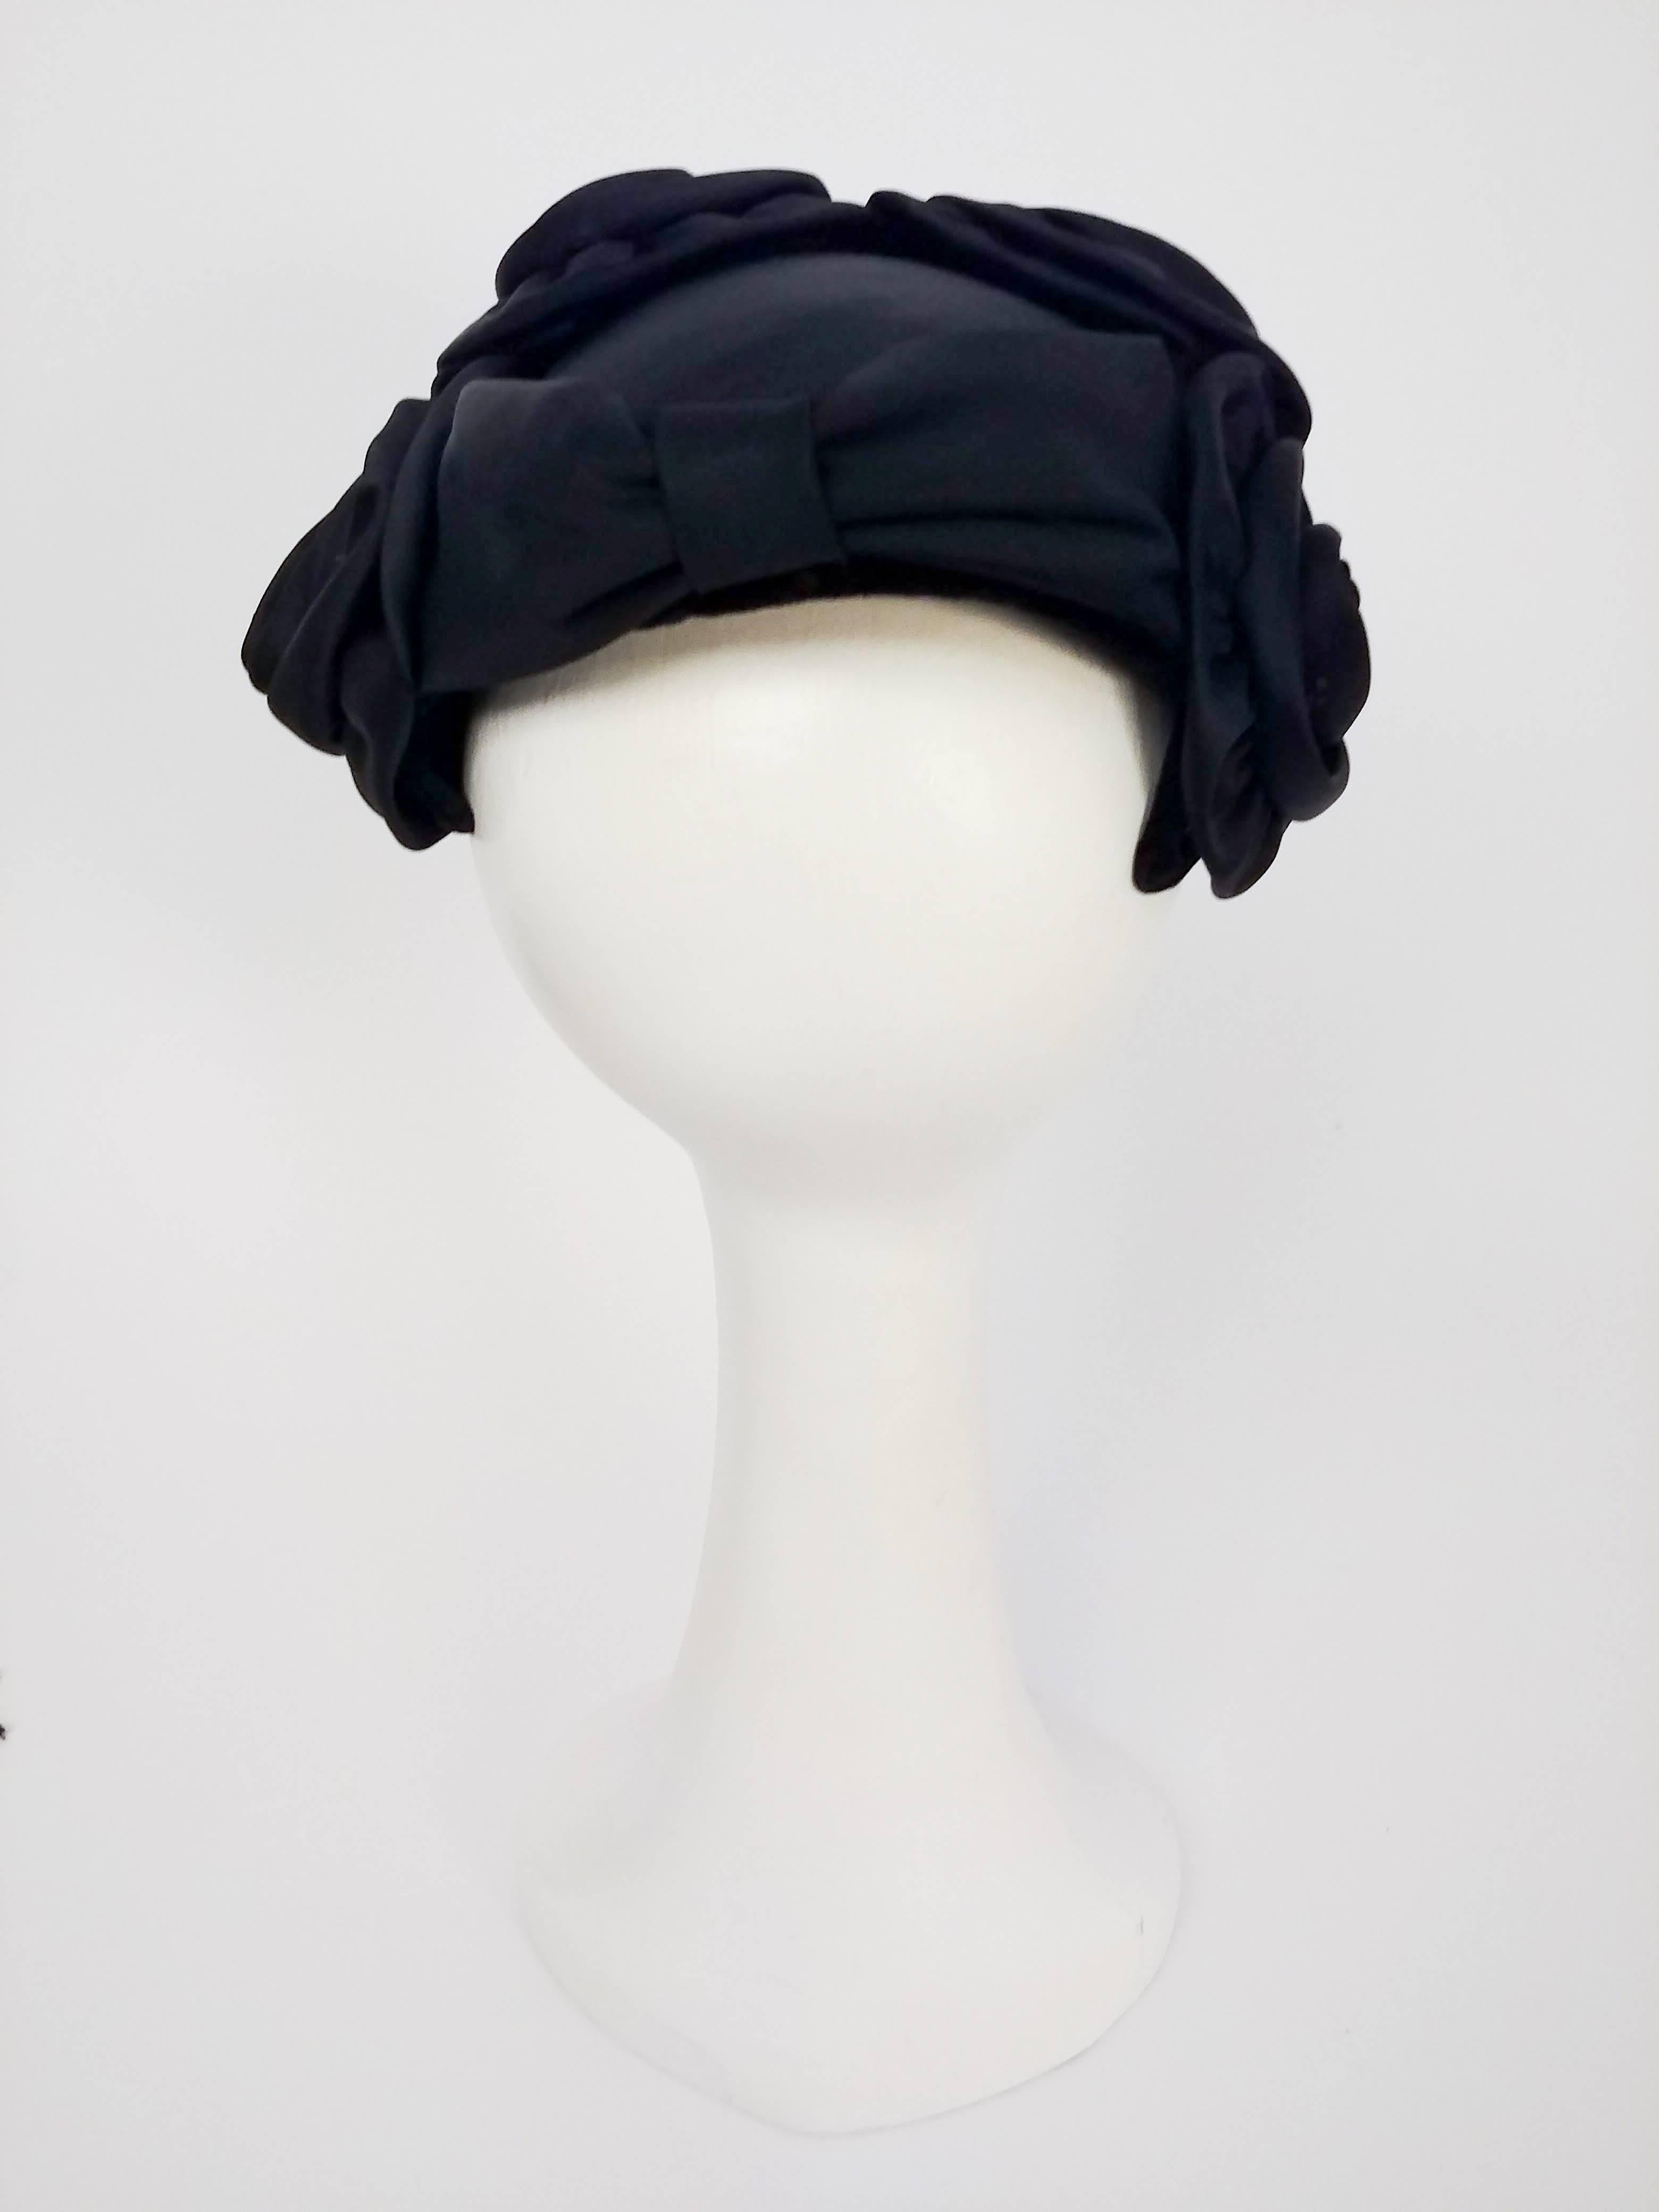 Women's 1950s Black Rosette Cocktail Hat